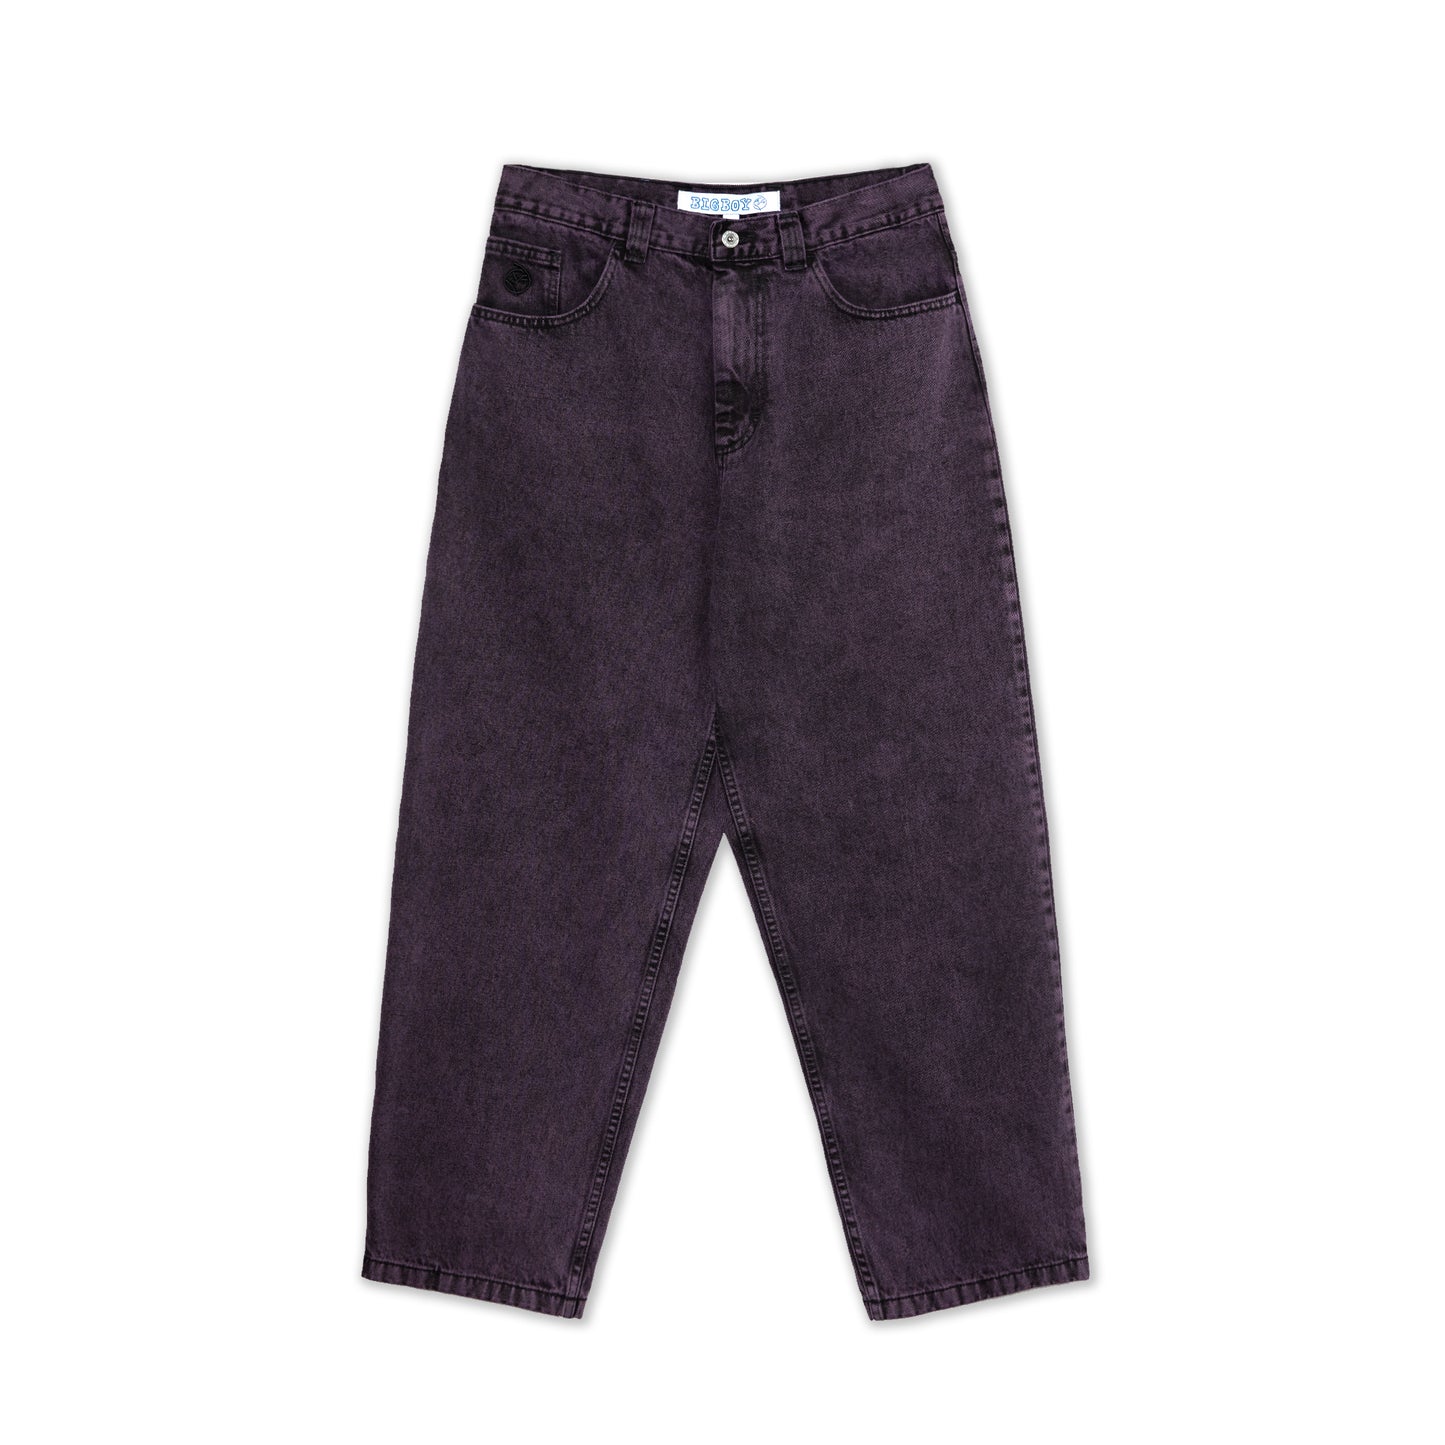 POLAR SKATE CO. - Big Boy Jeans Purple Black